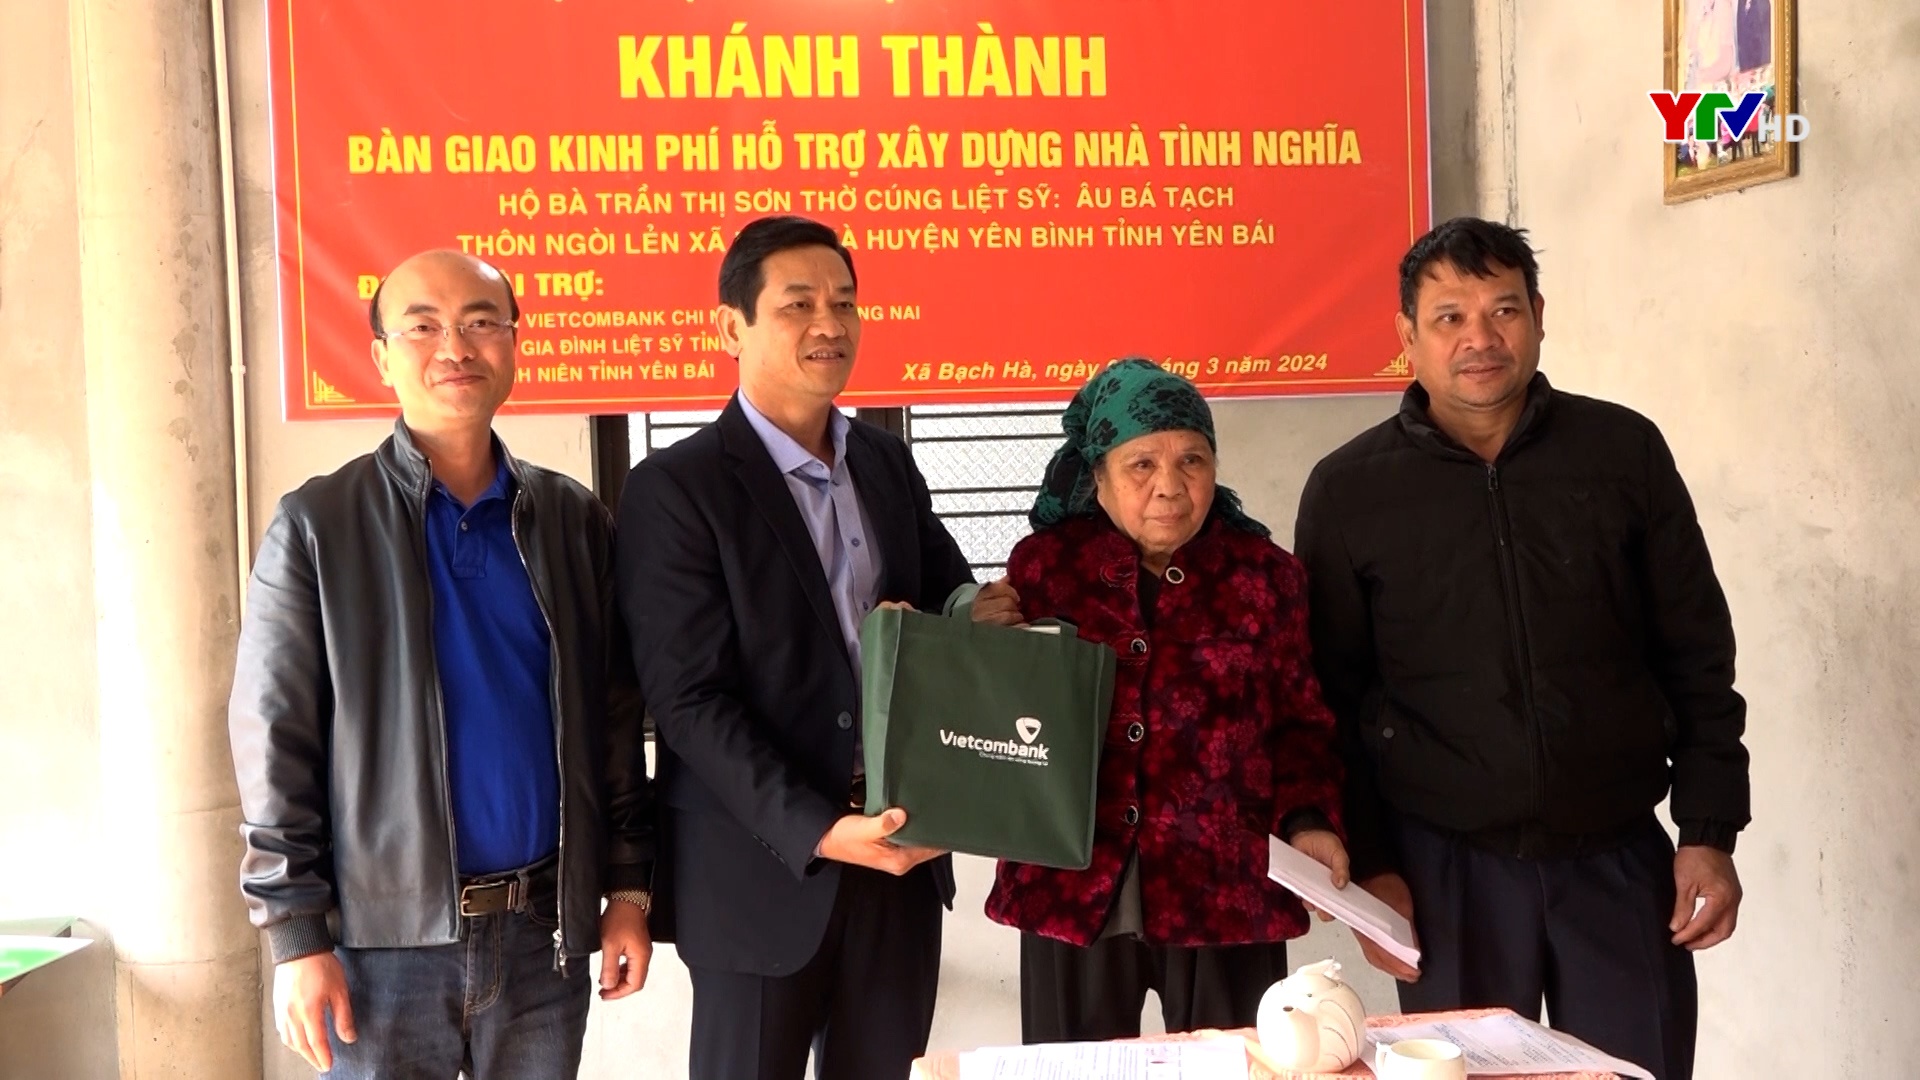 Trao hỗ trợ xây nhà cho thân nhân liệt sỹ tại huyện Trấn Yên và Yên Bình